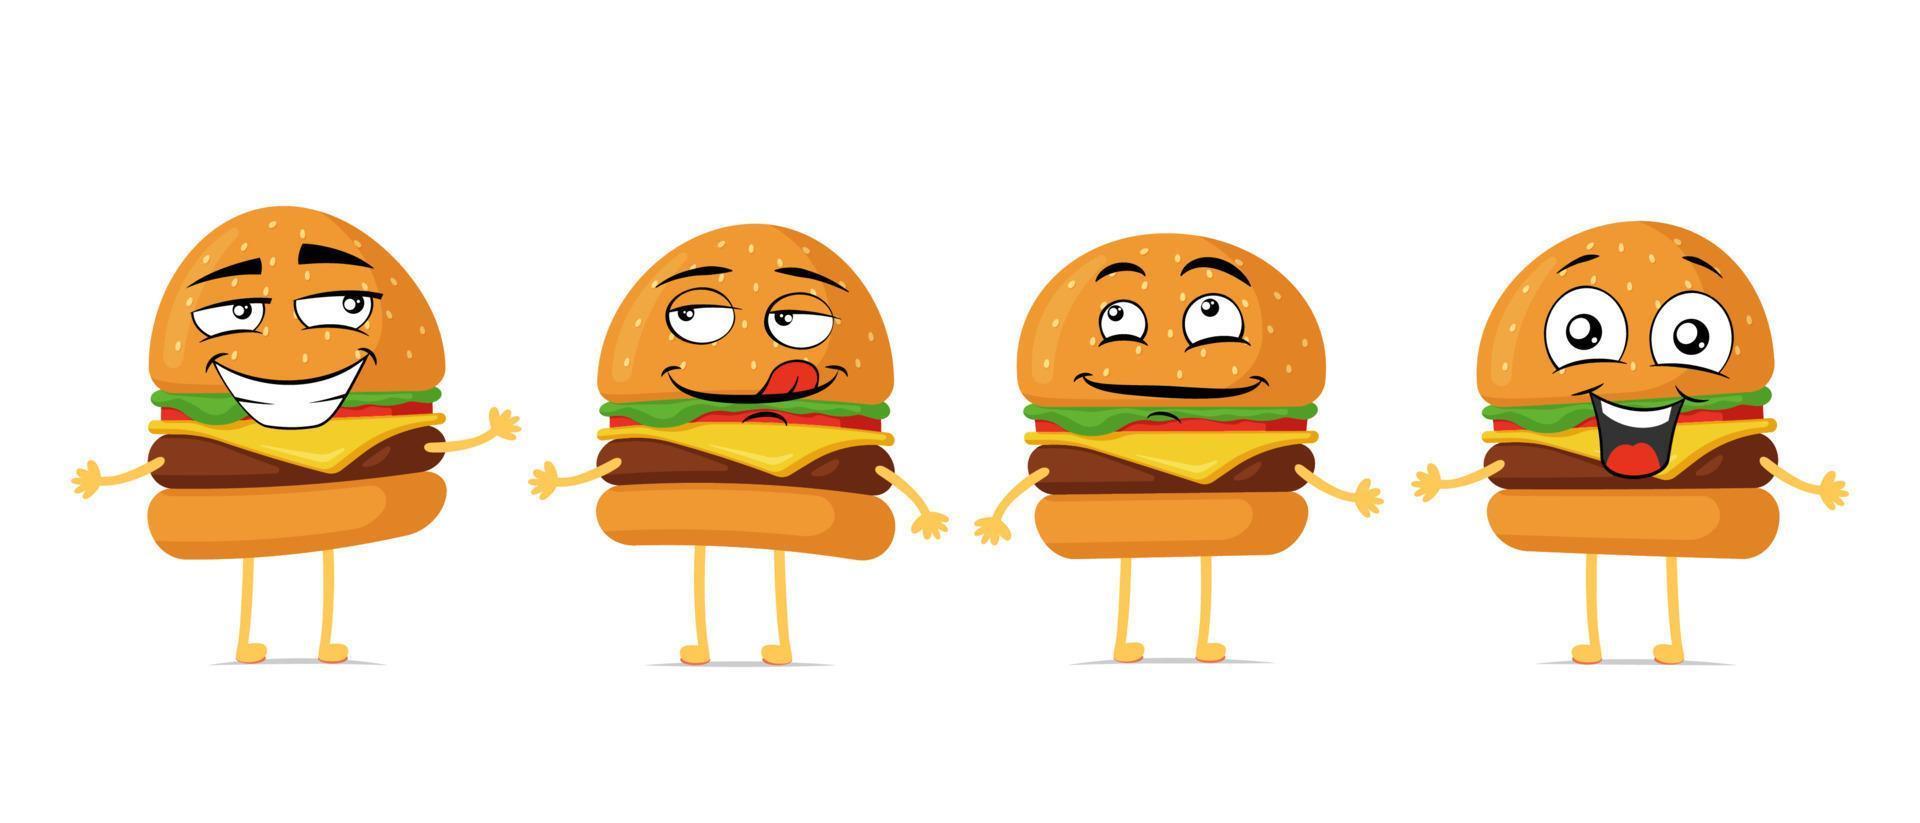 jeu de personnages de dessin animé souriant drôle de burger. hamburger mignon collection de mascotte de visage heureux. vecteur fast food cheeseburger joyeux émoticônes illustration eps